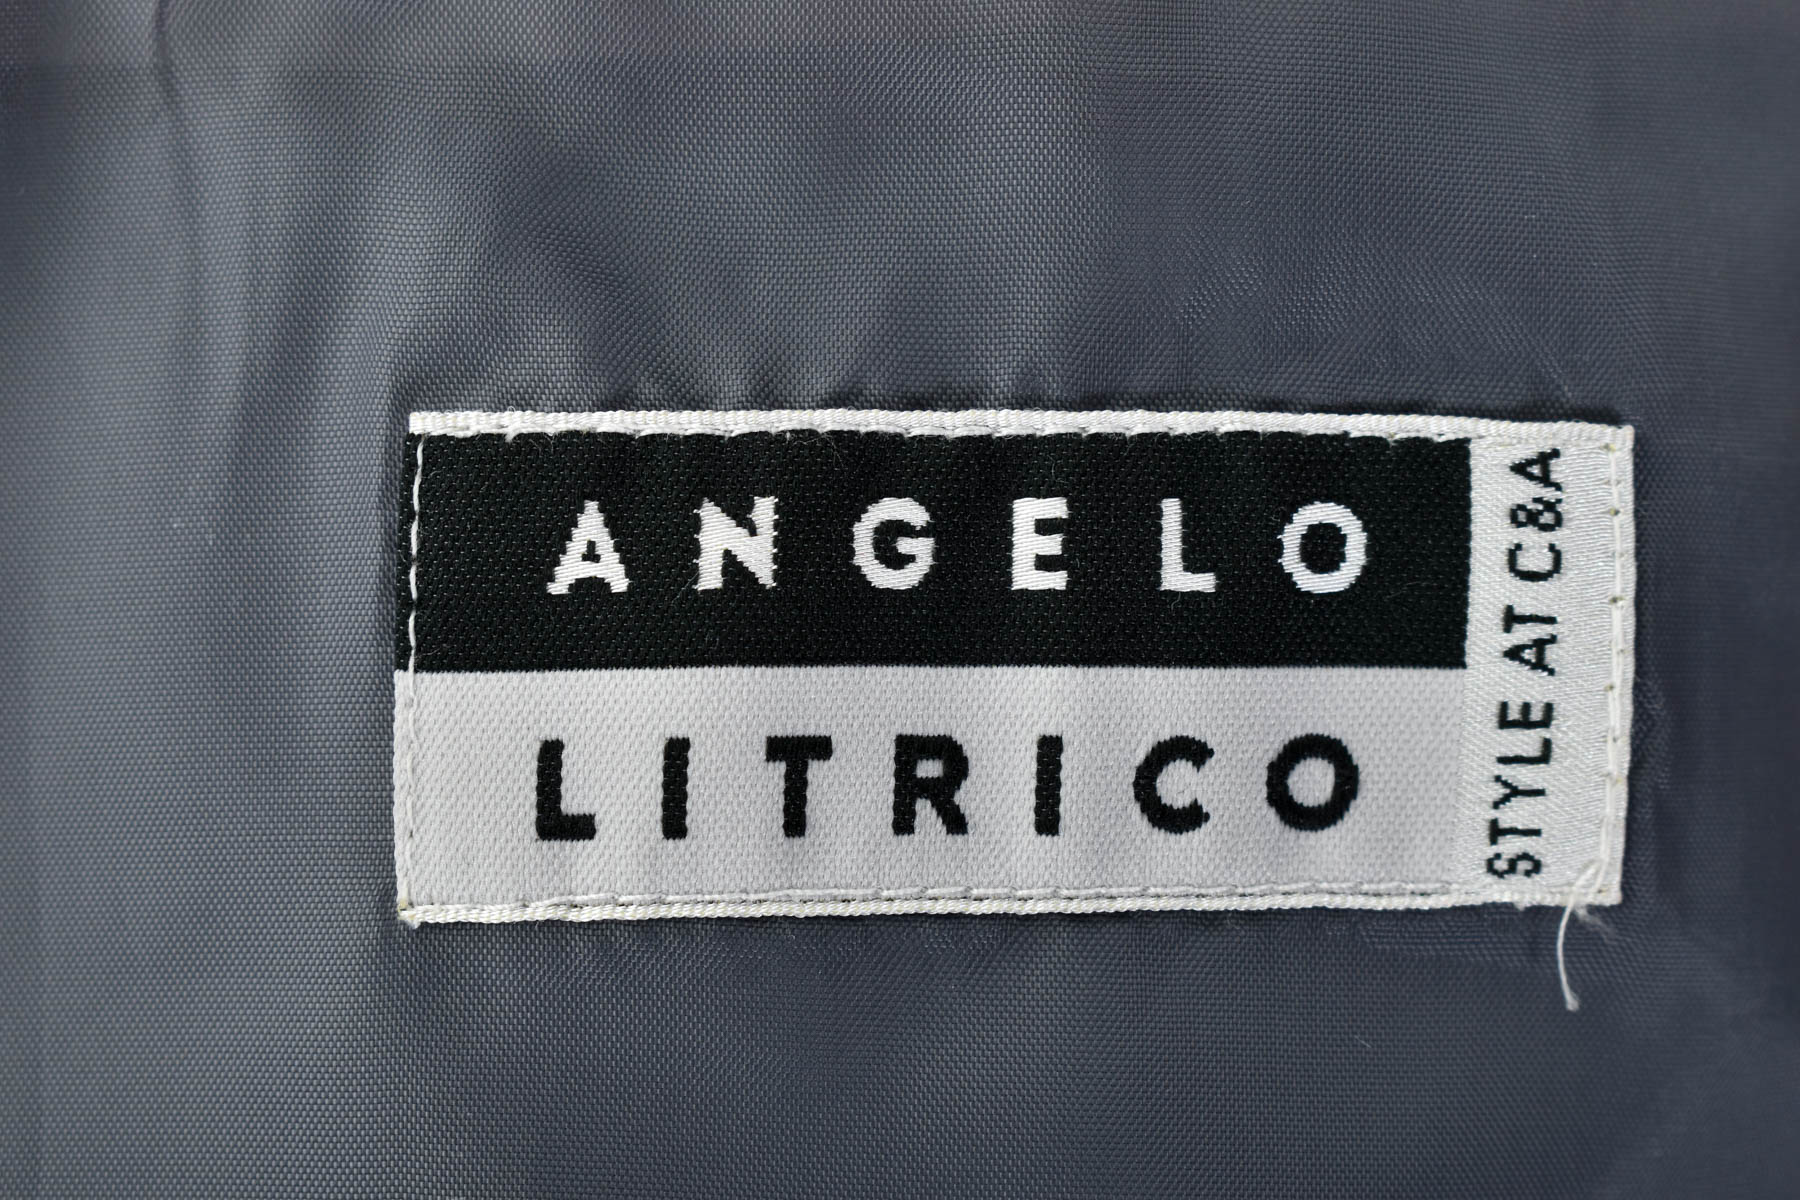 Σετ αντρών - Angelo Litrico - 3